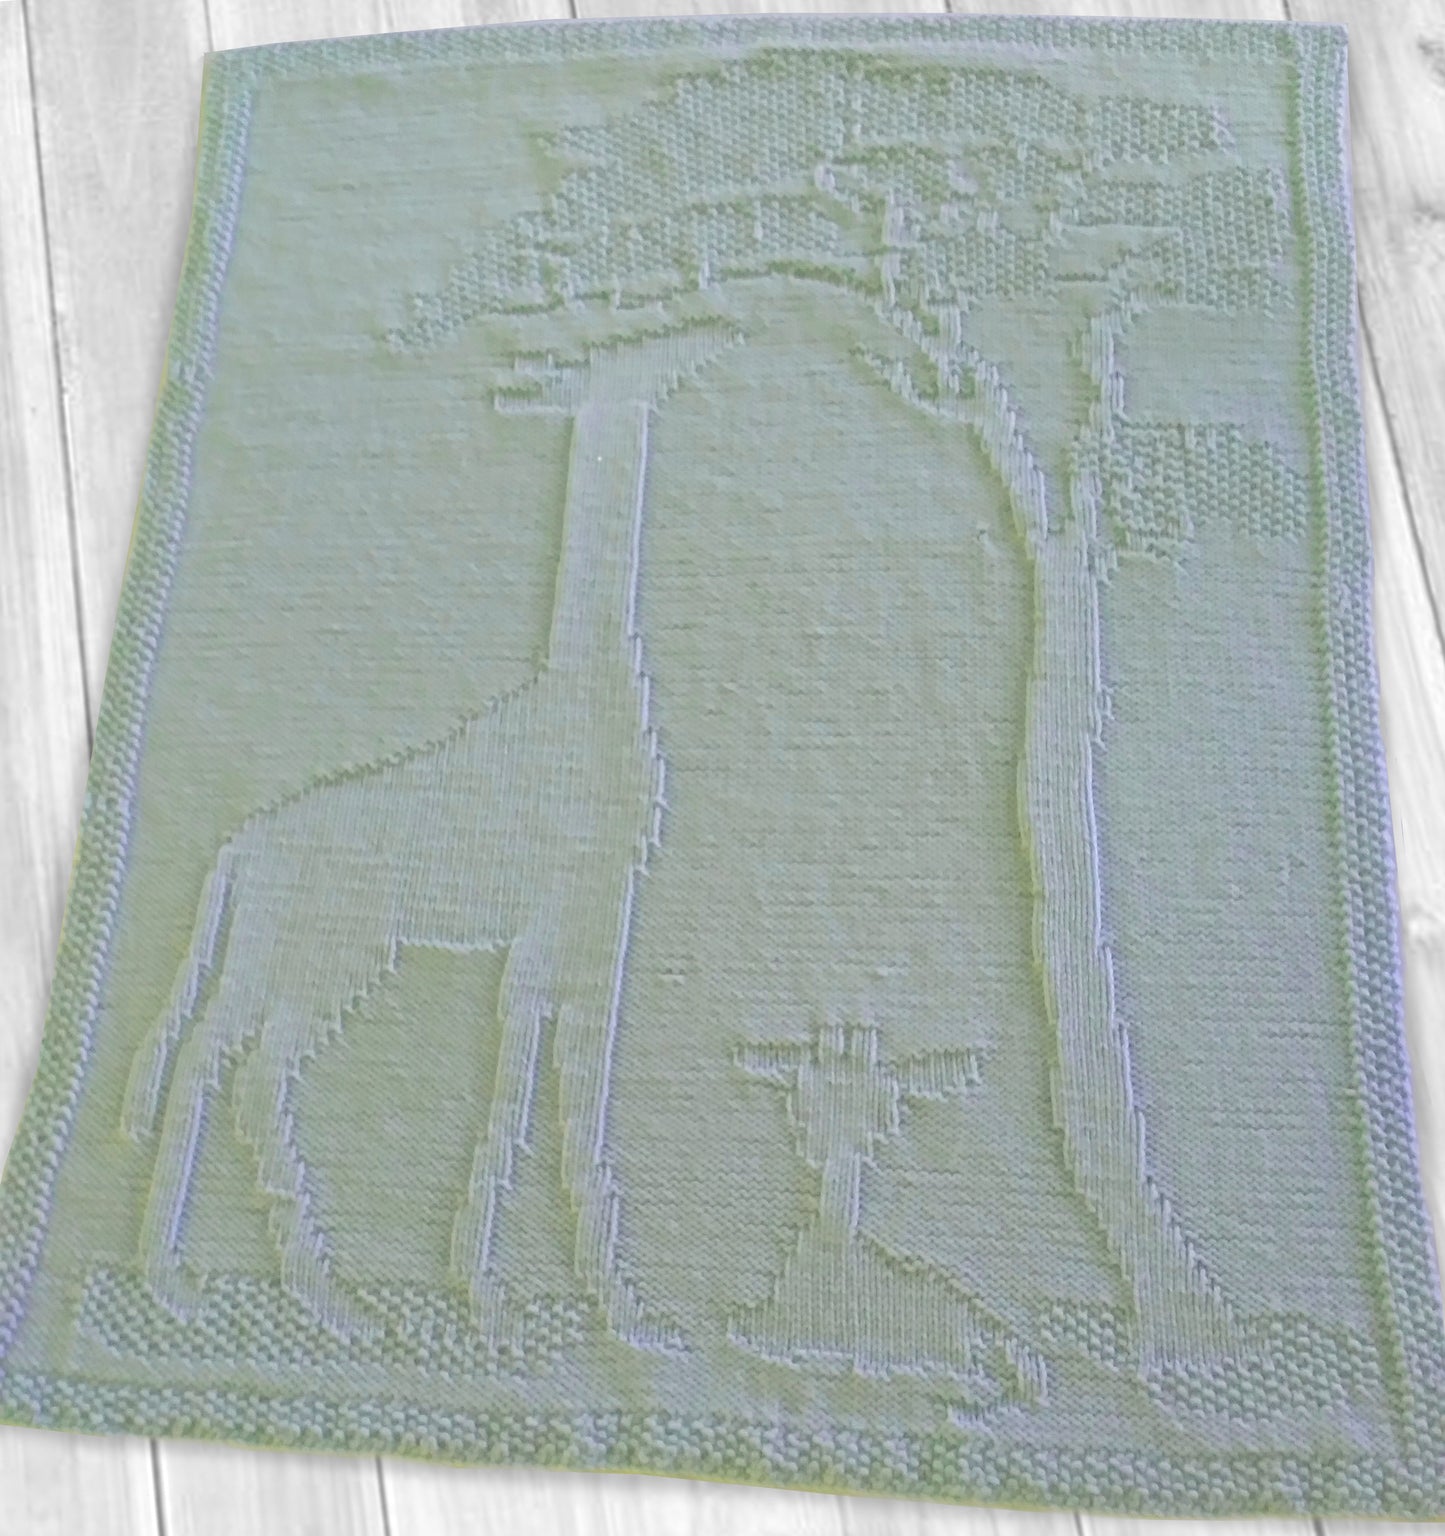 Giraffes in the Morning Baby Blanket (baby blanket)